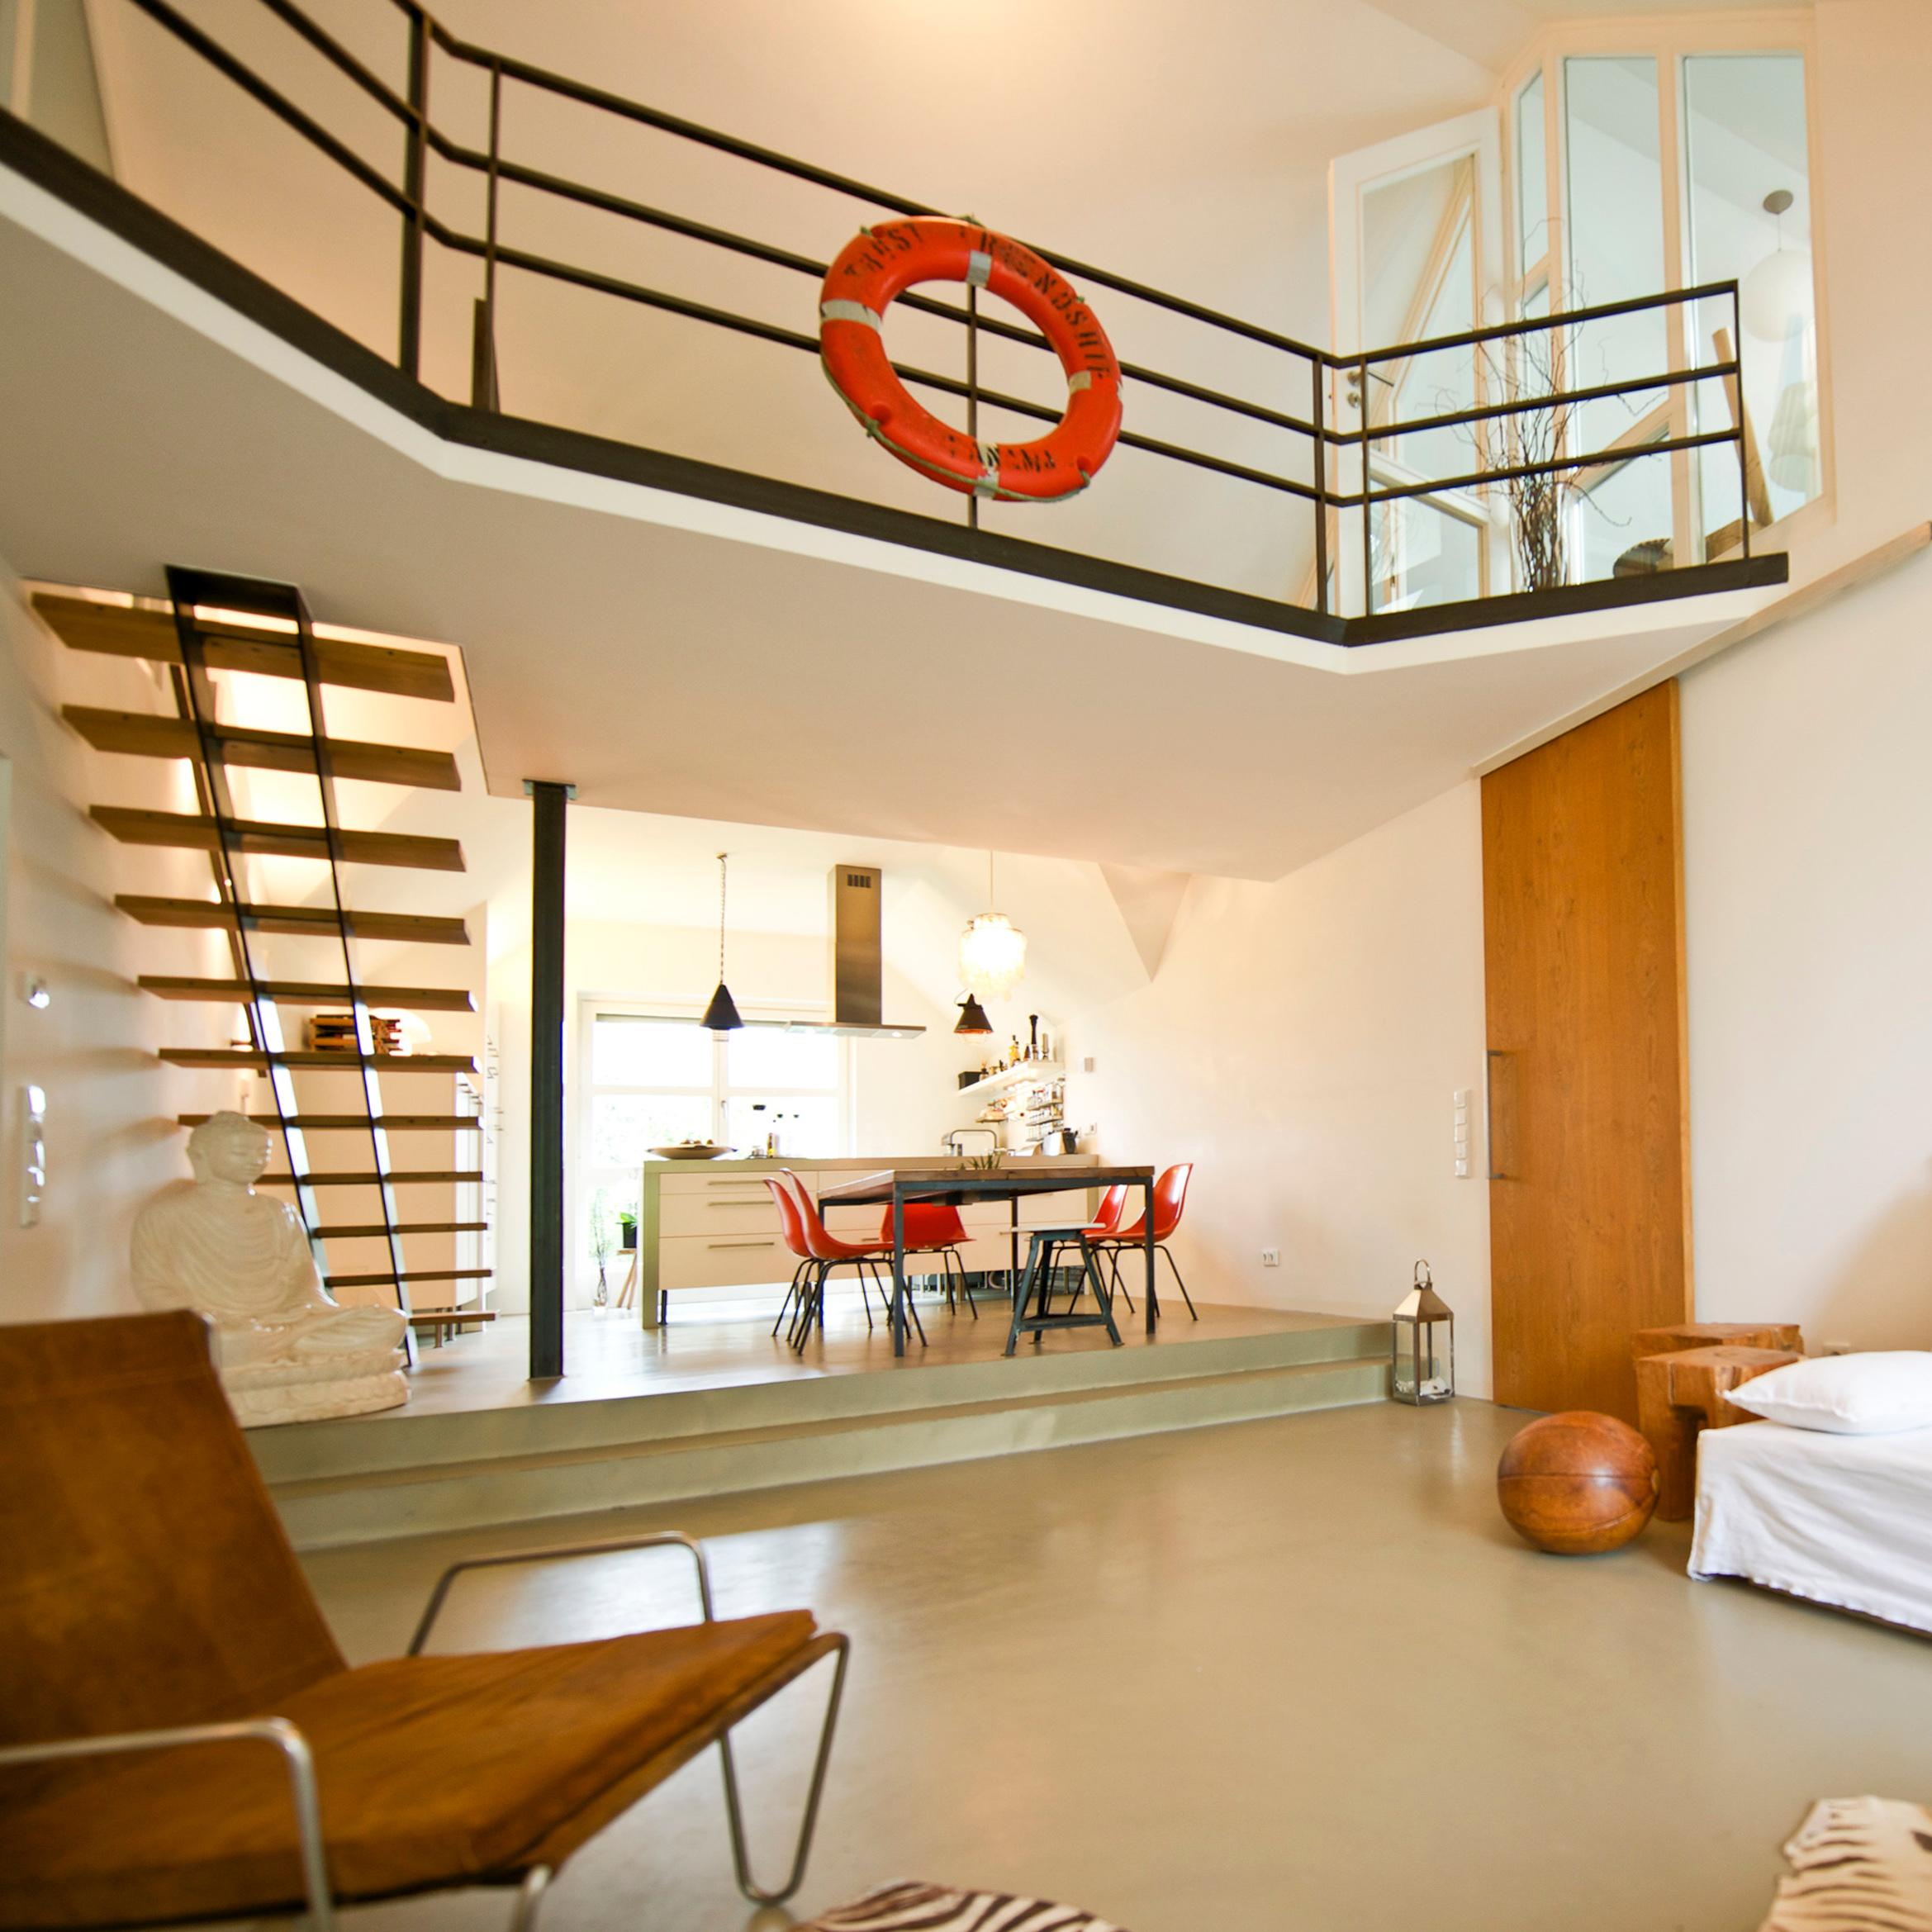 Gesamte Wohnung mit Sichtbetonboden #betonboden #esstisch ©Zolaproduction